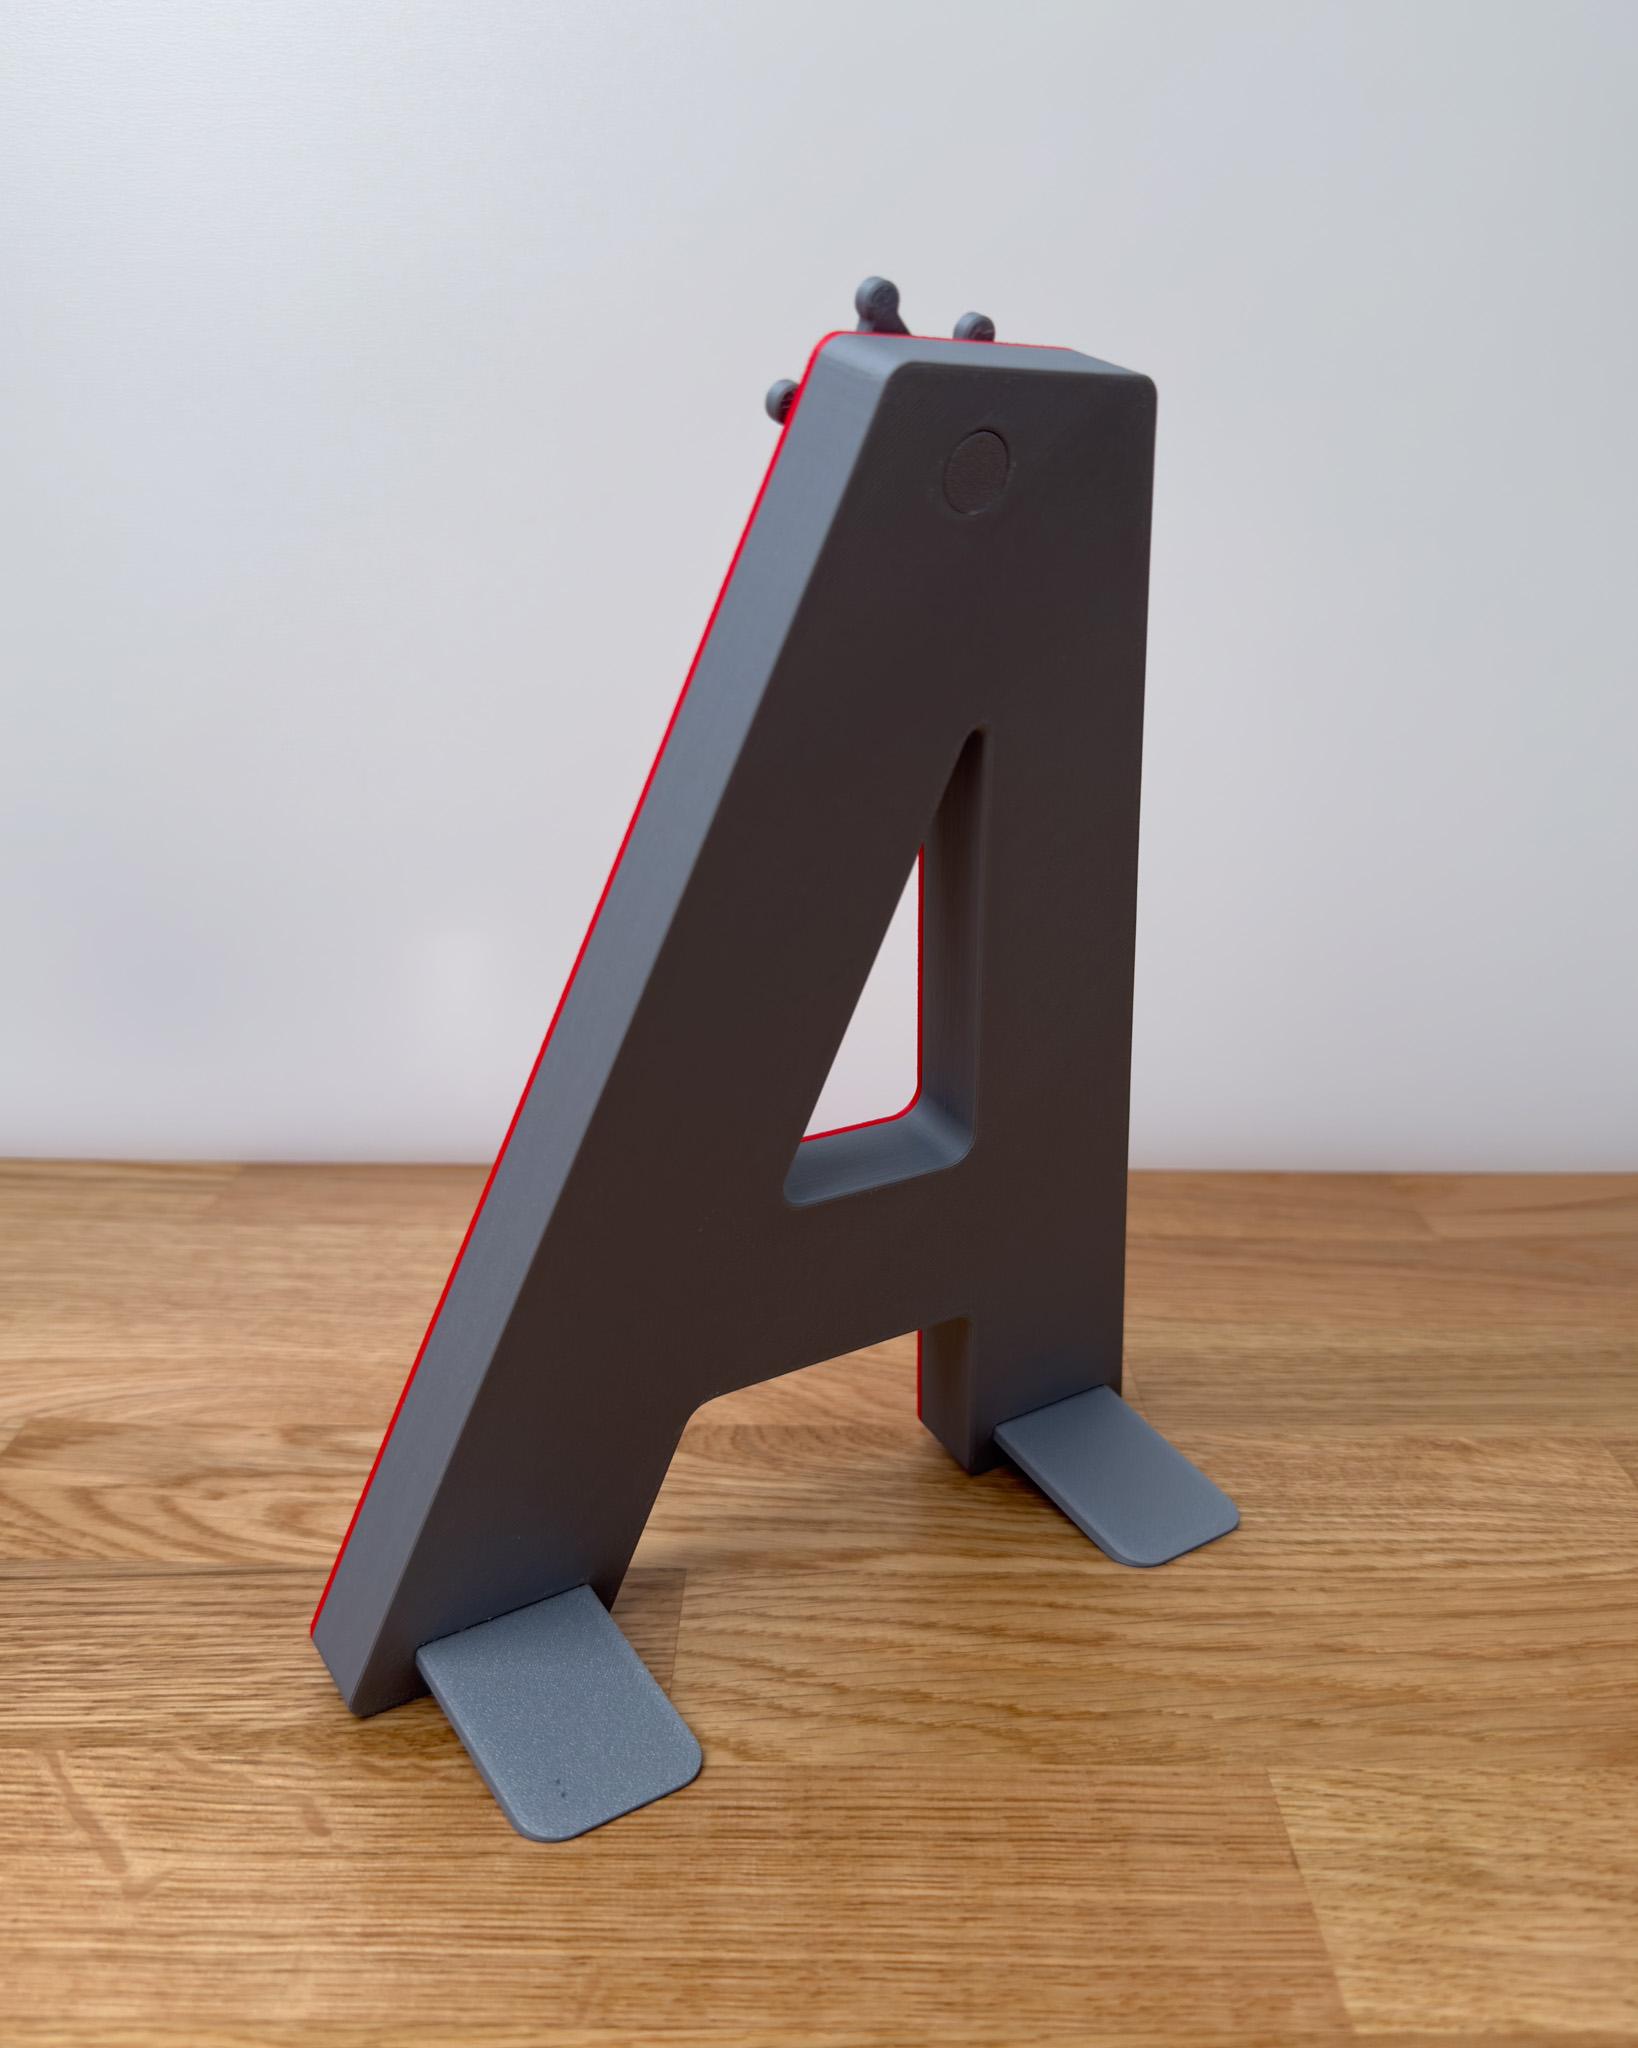 3D Letter L - by TeeTi3D 3d model